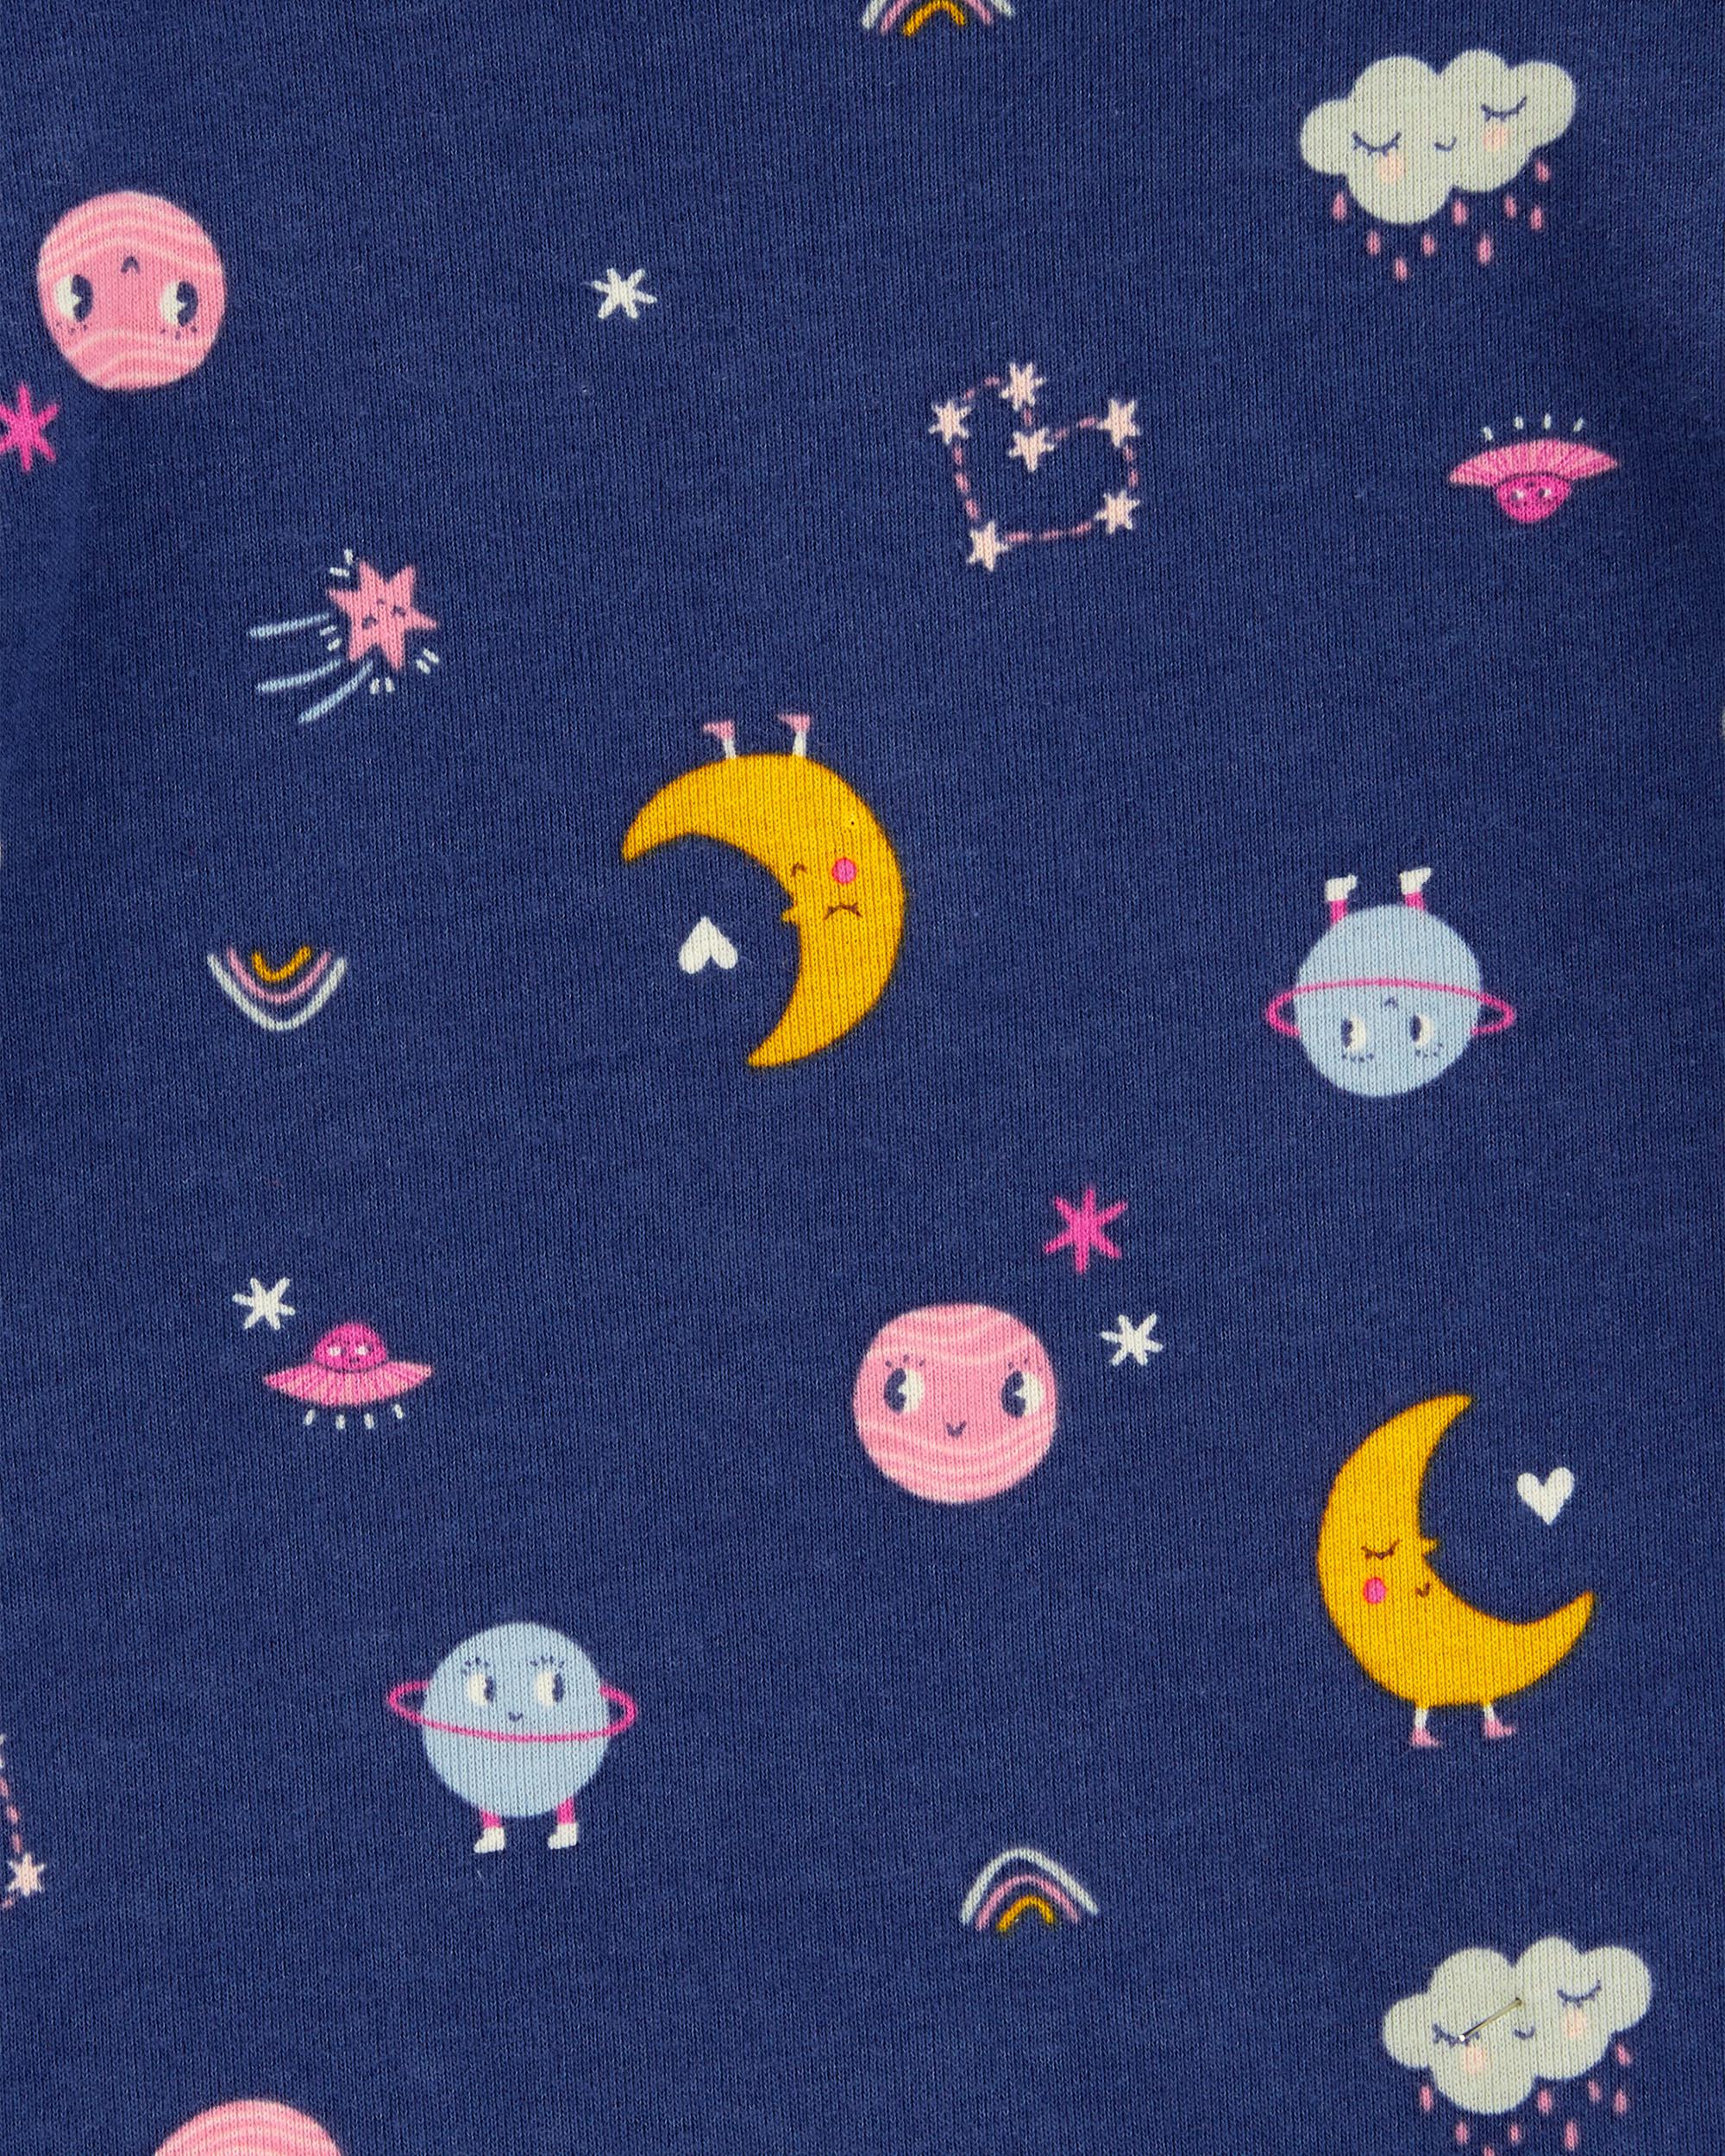 Baby 4-Piece Space 100% Snug Fit Cotton Pyjamas